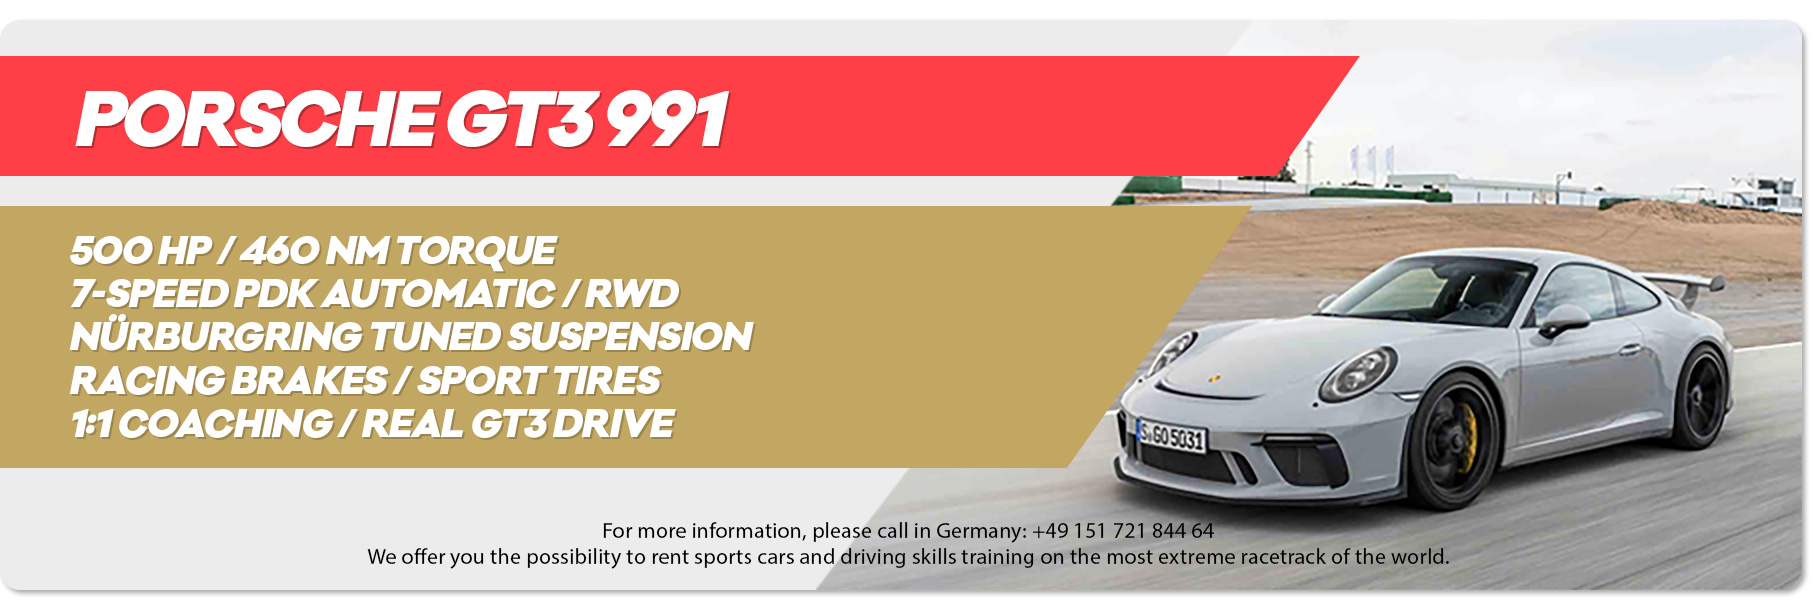 Alquile un Porsche GT3 991 en Nürburgring